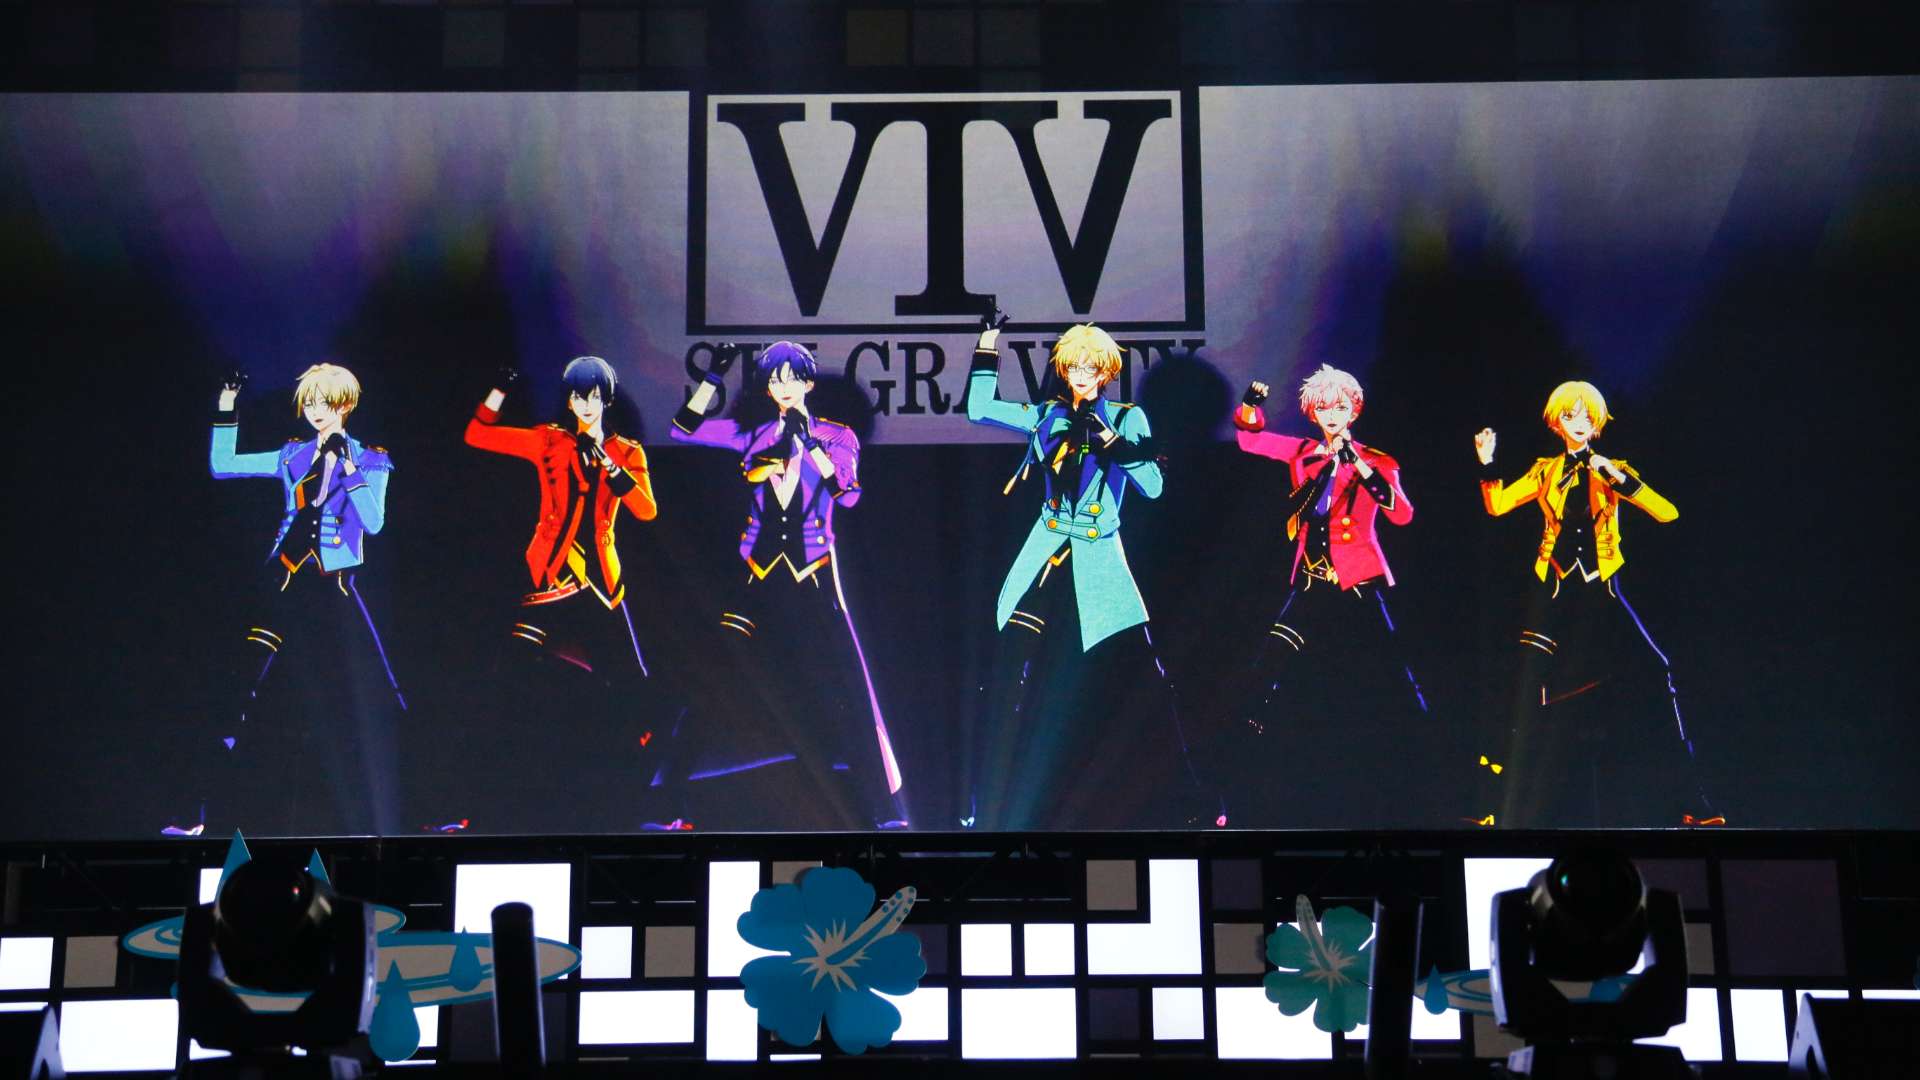 ツキウタ Miracle Moon Festival Tsukiuta Virtual Live 19 Four Seasons の動画視聴 あらすじ U Next